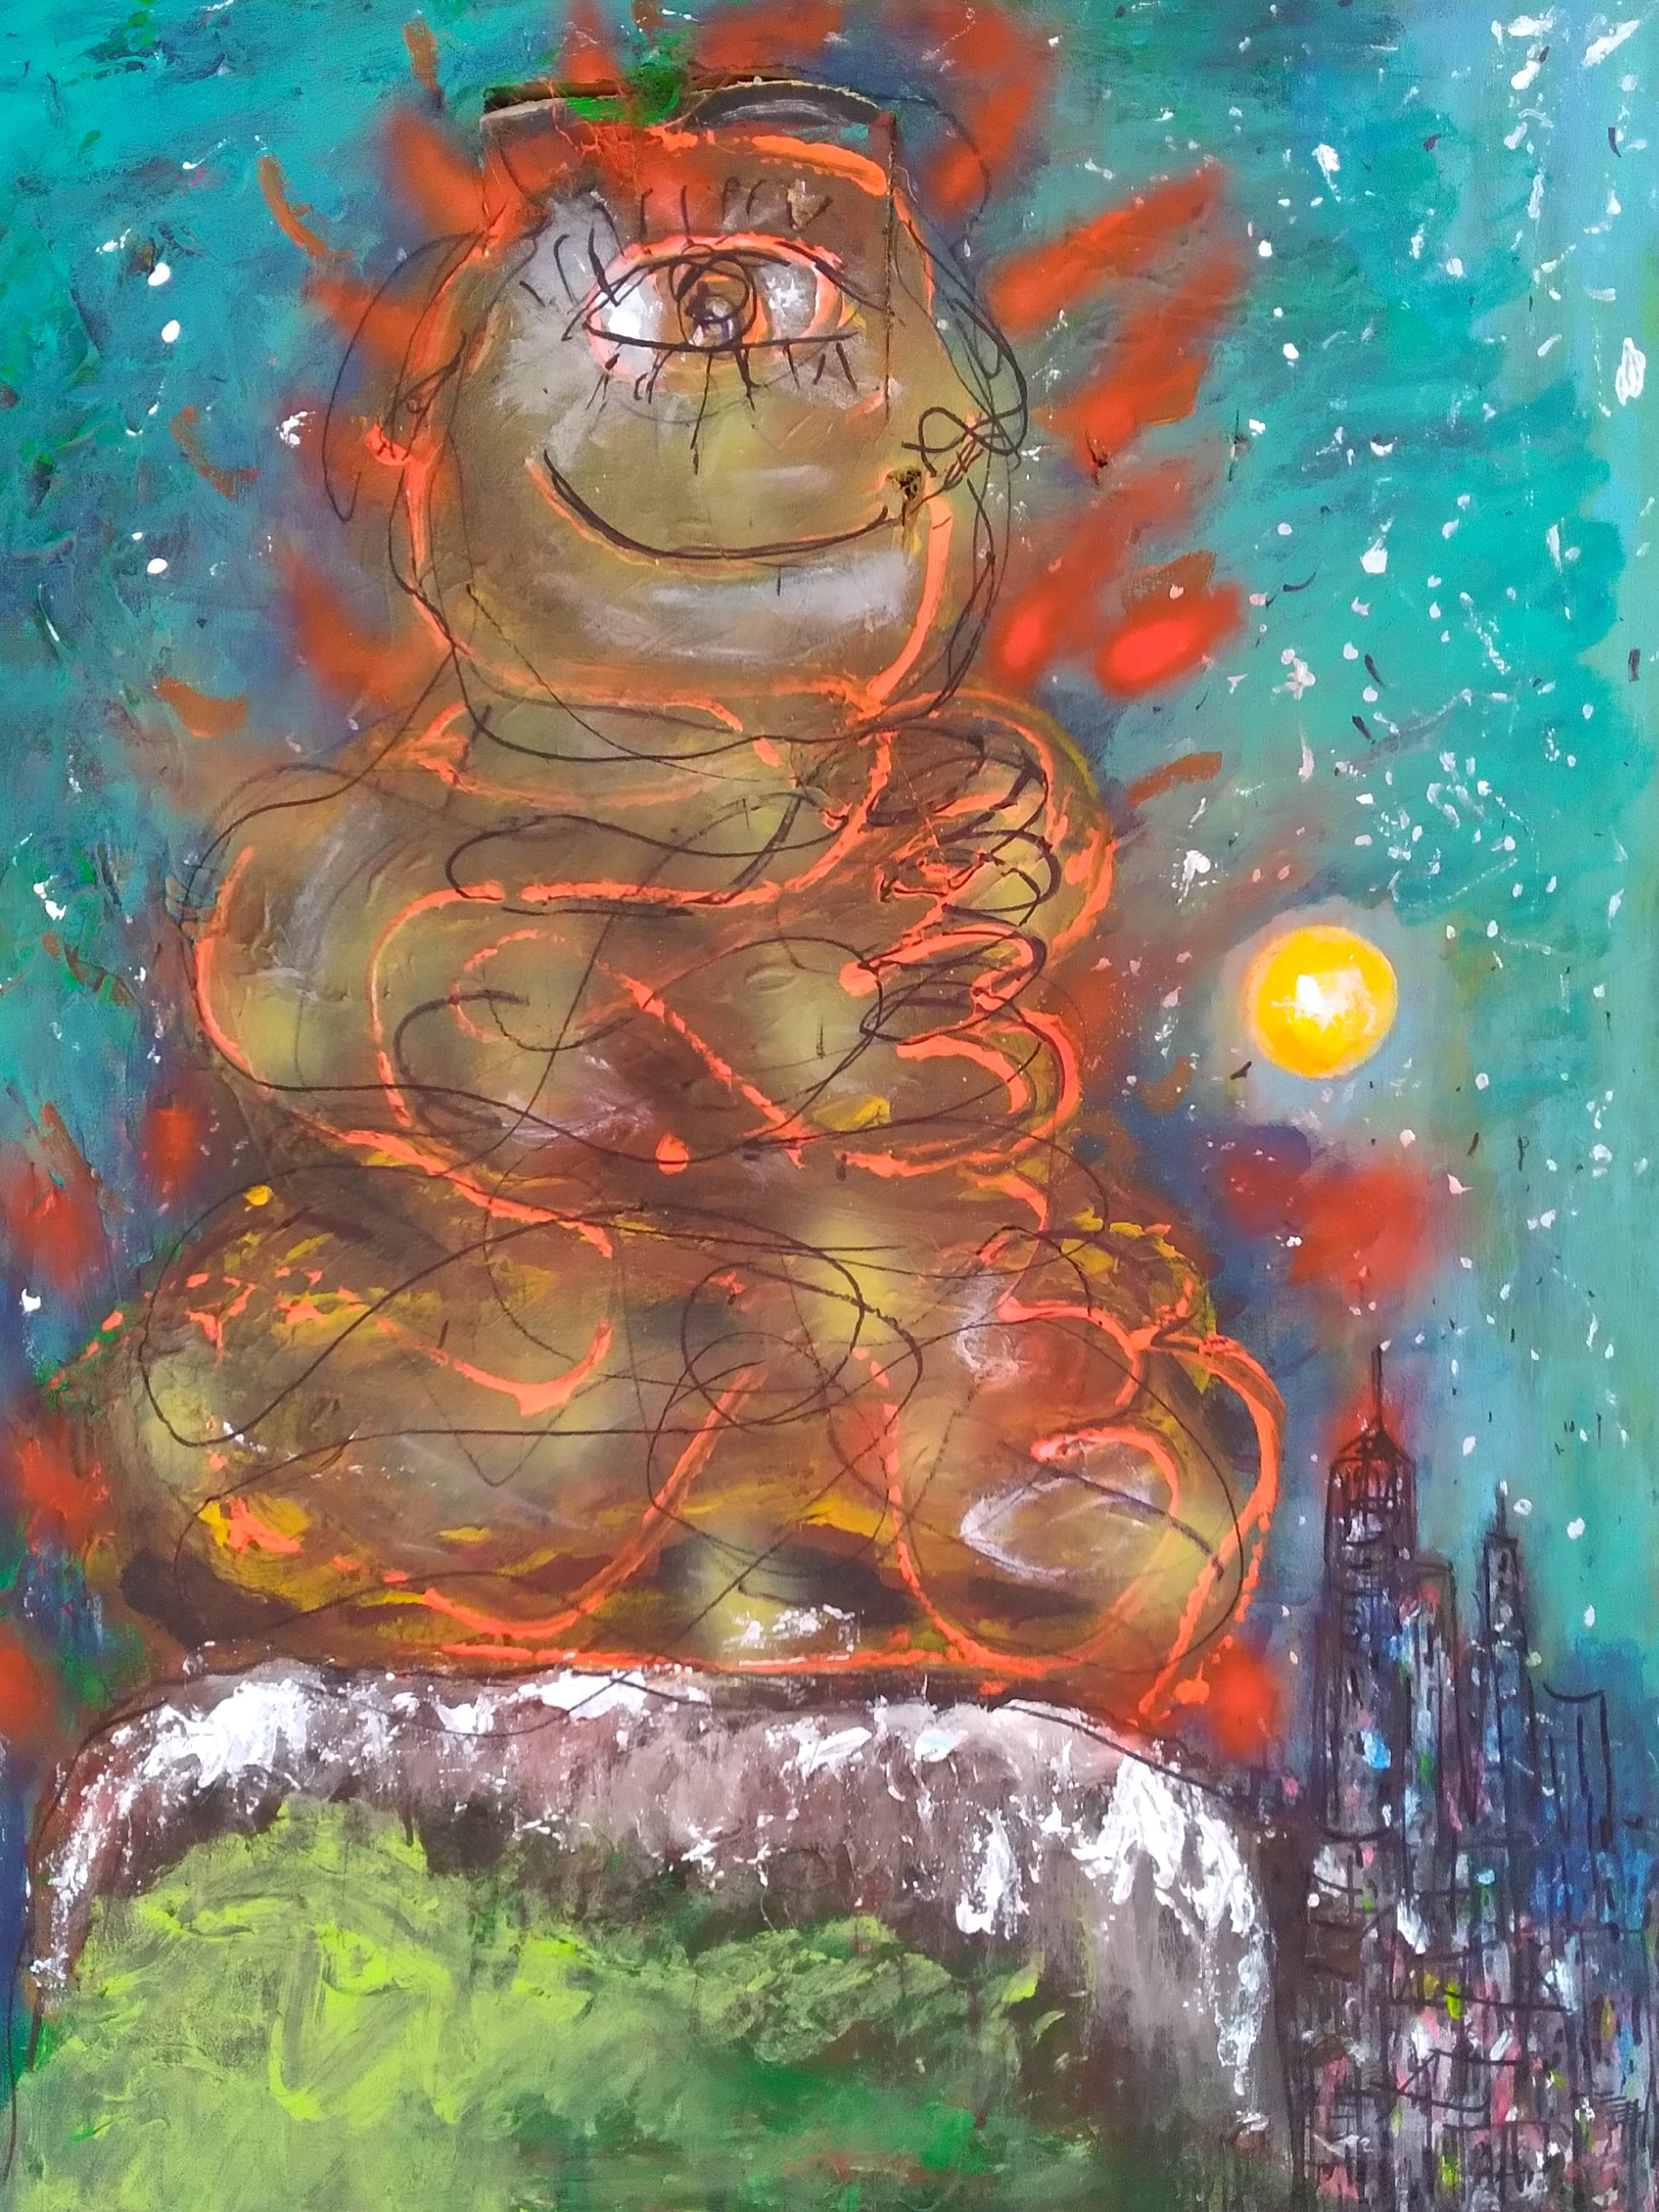 Buddha, 2019. Oil, acrylic on canvas, 34"x 26".